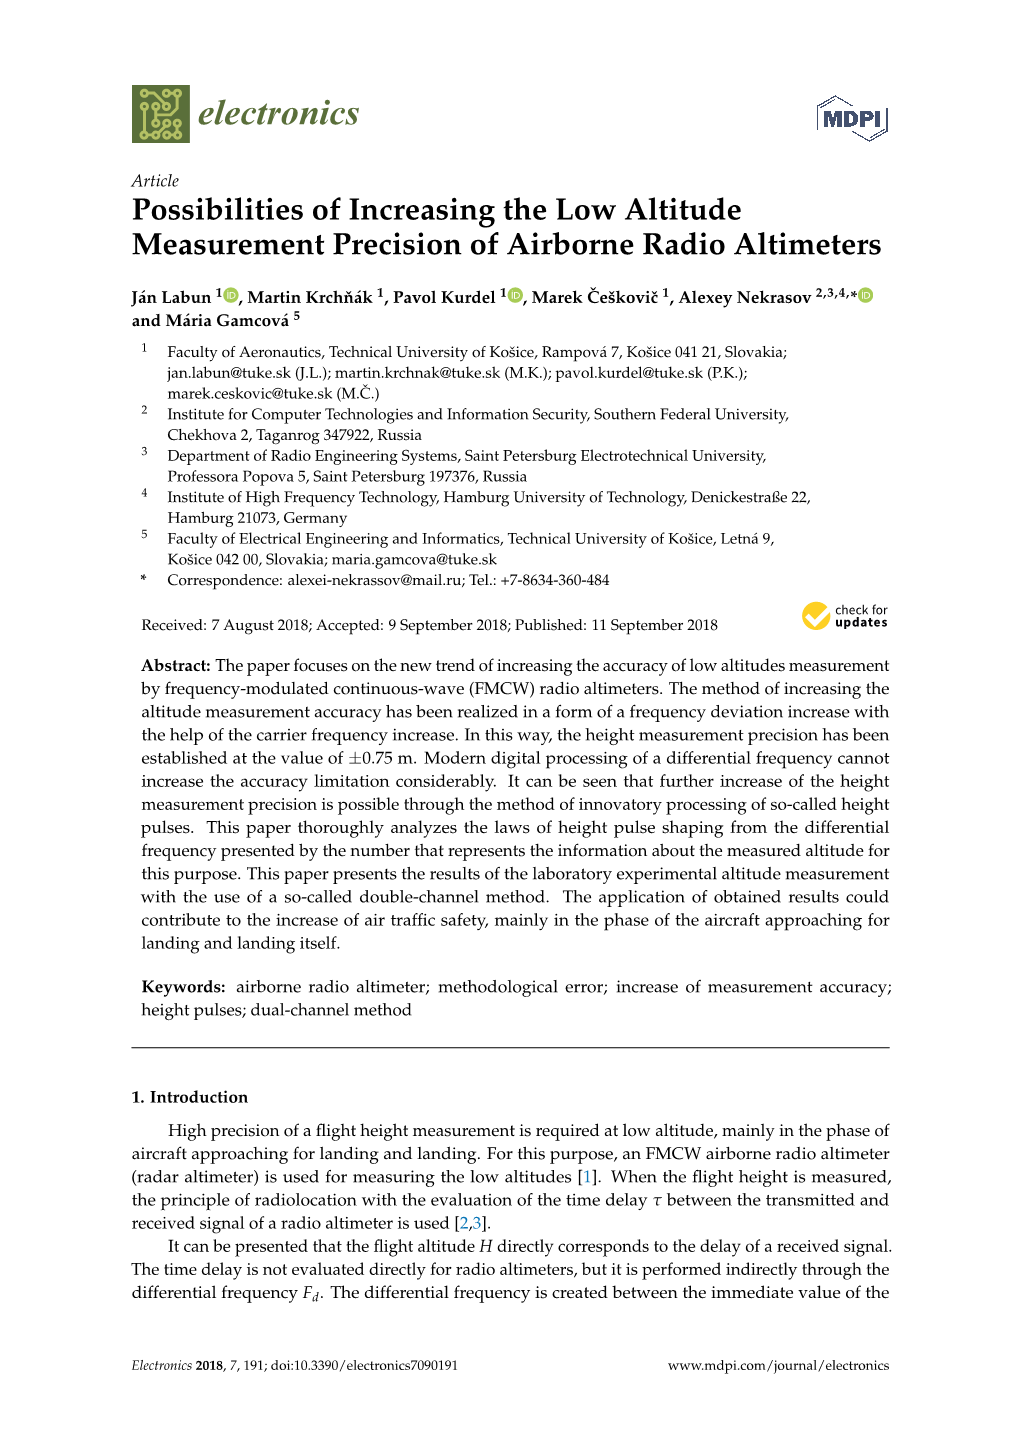 Possibilities of Increasing the Low Altitude Measurement Precision of Airborne Radio Altimeters